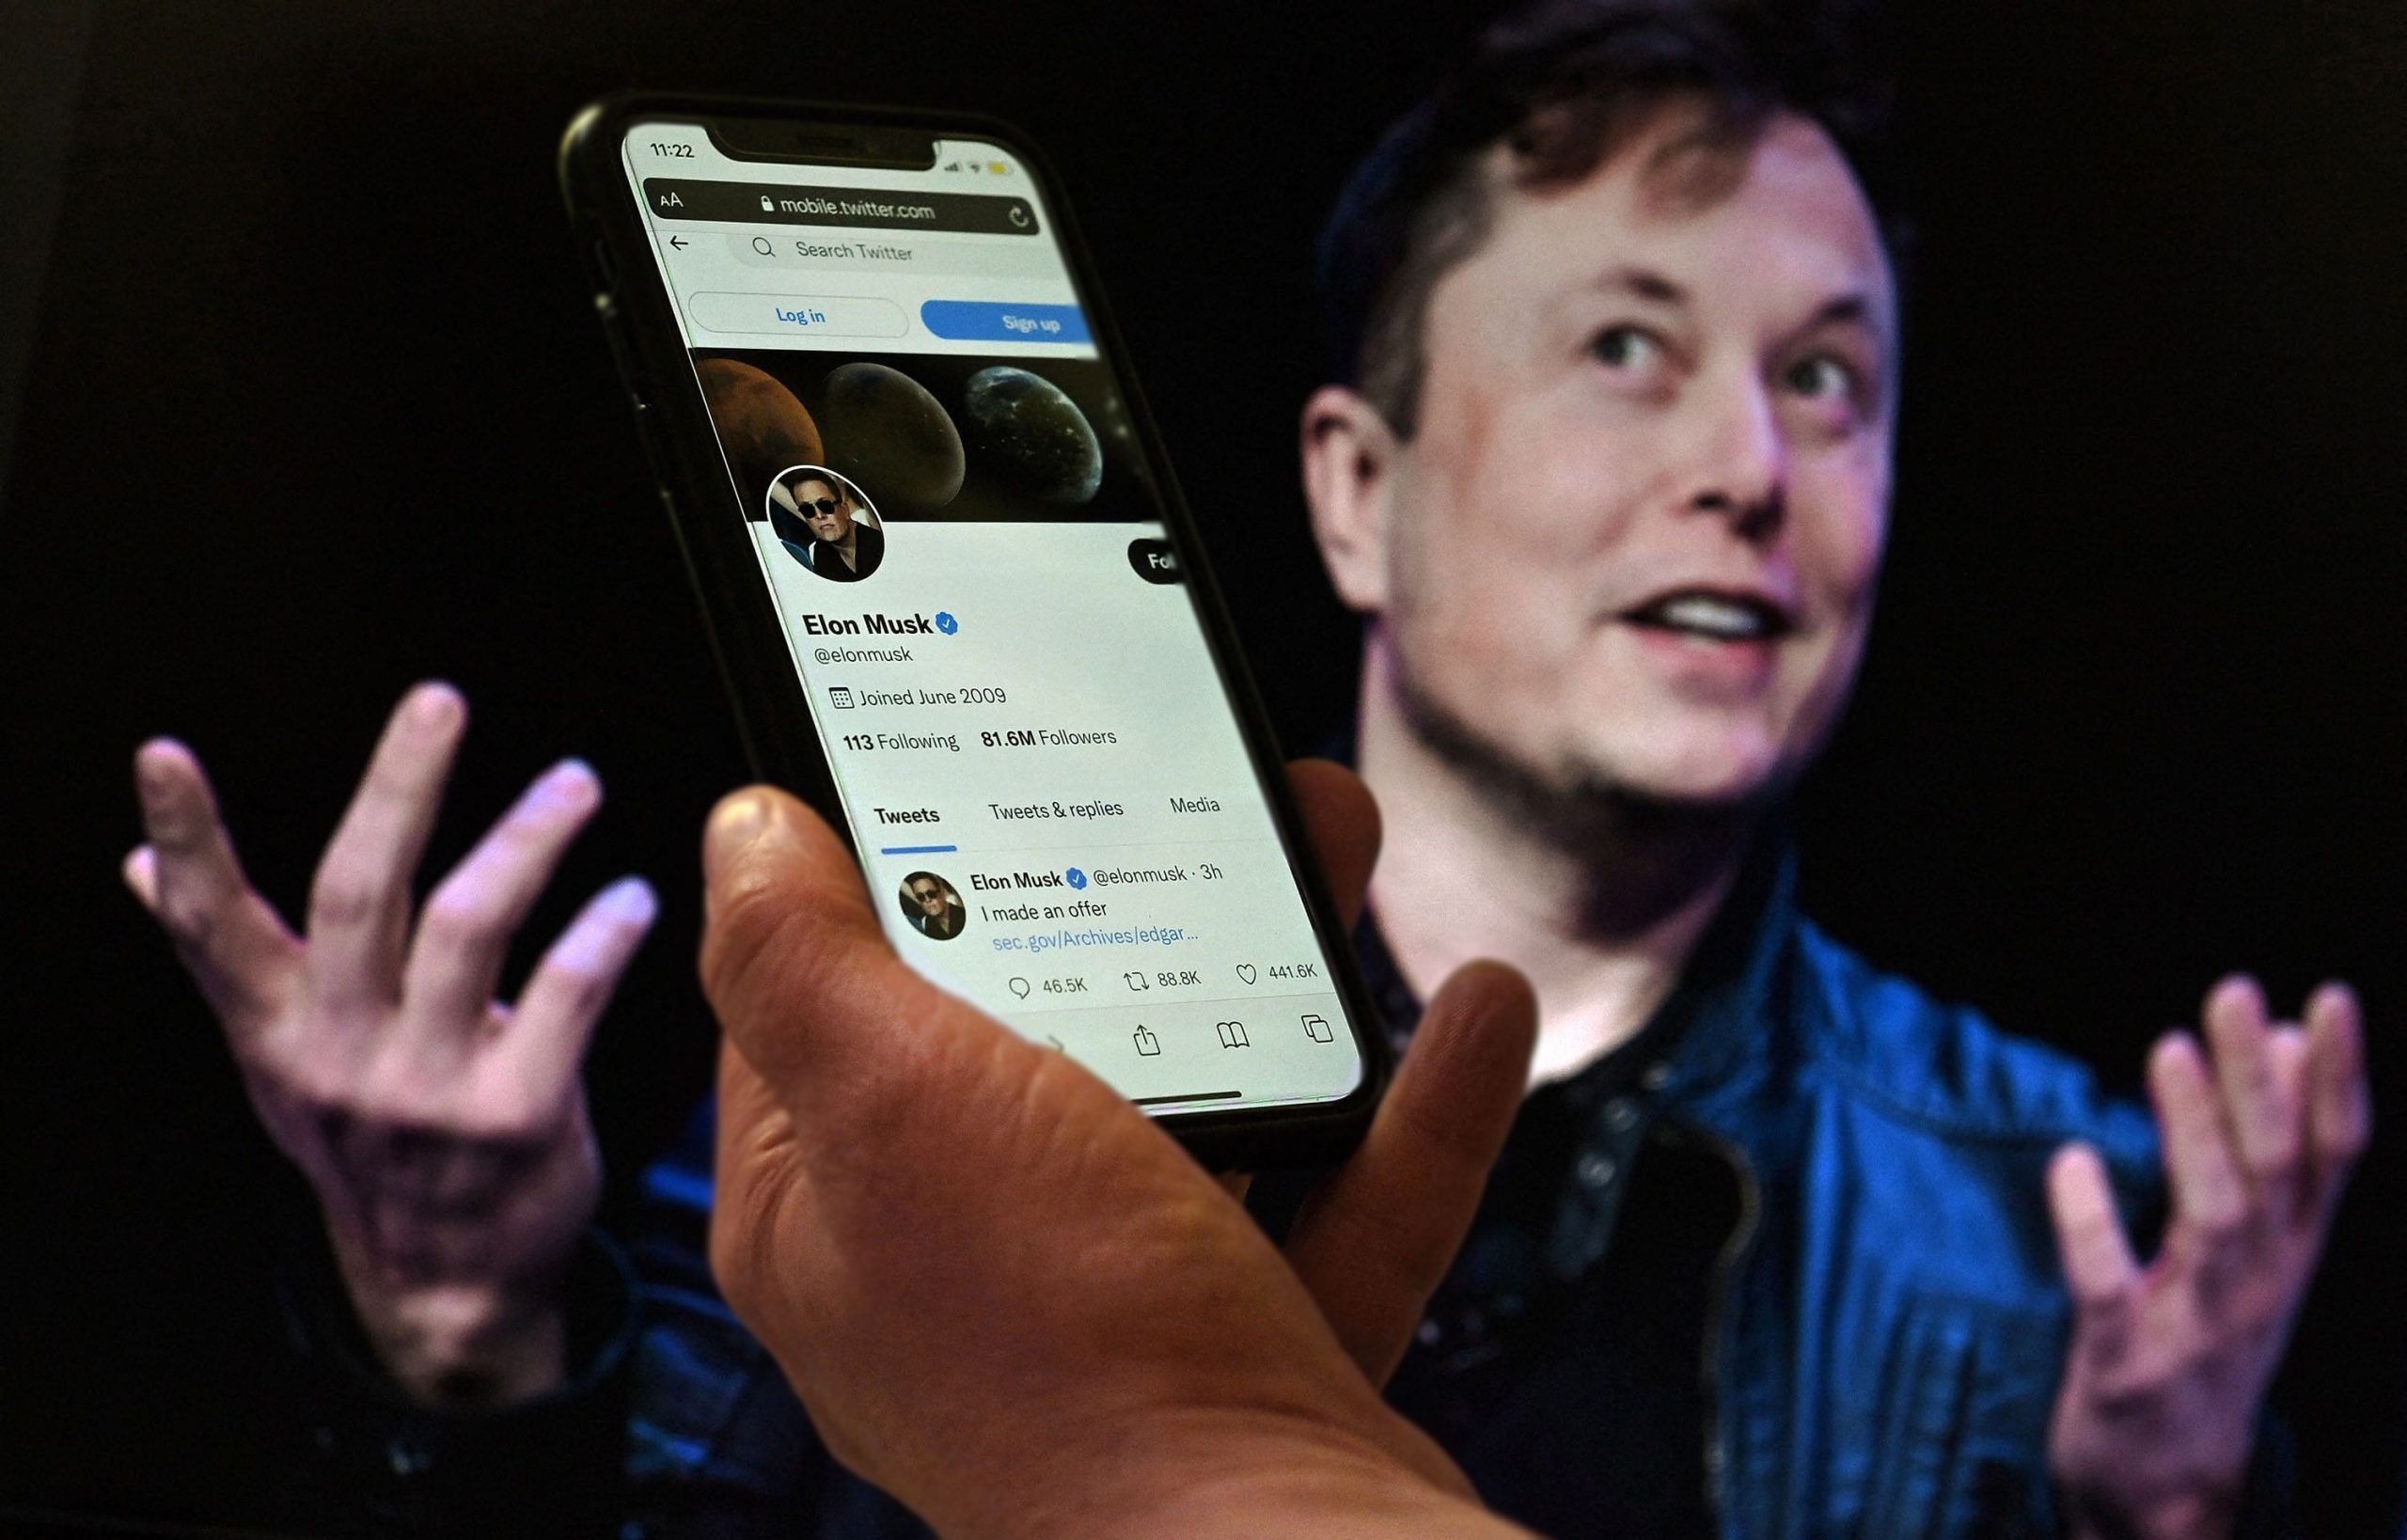 ▶ “No hay otra opción”, dice Elon Musk tras realizar despidos masivos en Twitter